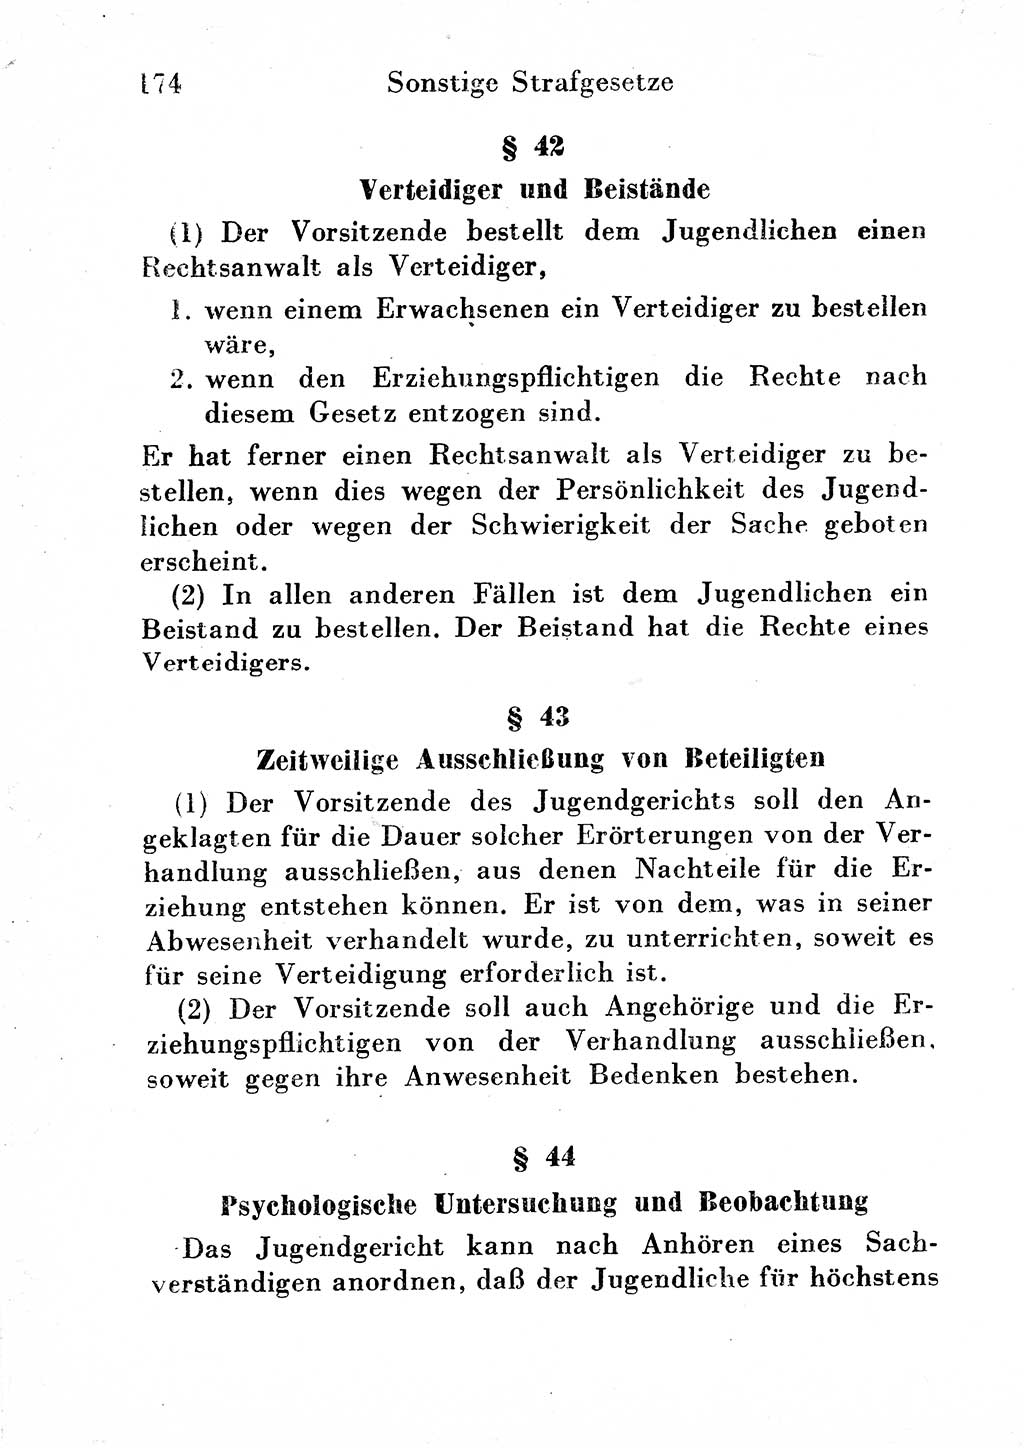 Strafgesetzbuch (StGB) und andere Strafgesetze [Deutsche Demokratische Republik (DDR)] 1954, Seite 174 (StGB Strafges. DDR 1954, S. 174)